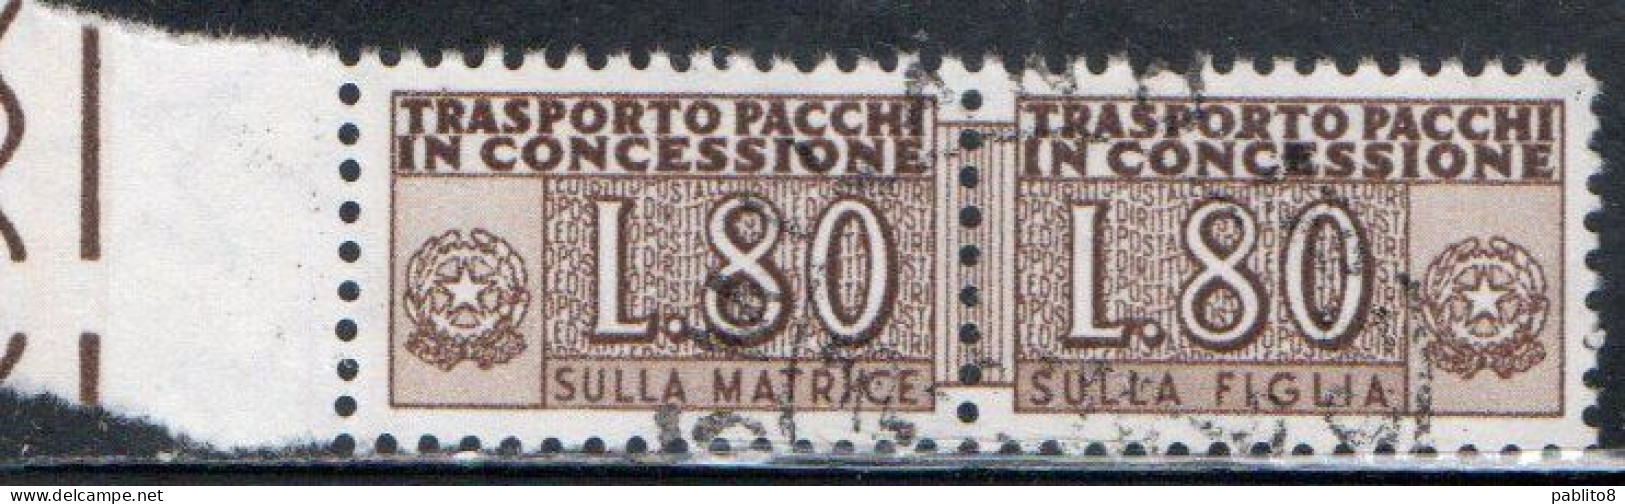 ITALIA REPUBBLICA ITALY REPUBLIC 1955 1981 PACCHI IN CONCESSIONE PARCEL POST STELLE STARS 1960 LIRE 80 USATO USED OBLIT - Pacchi In Concessione